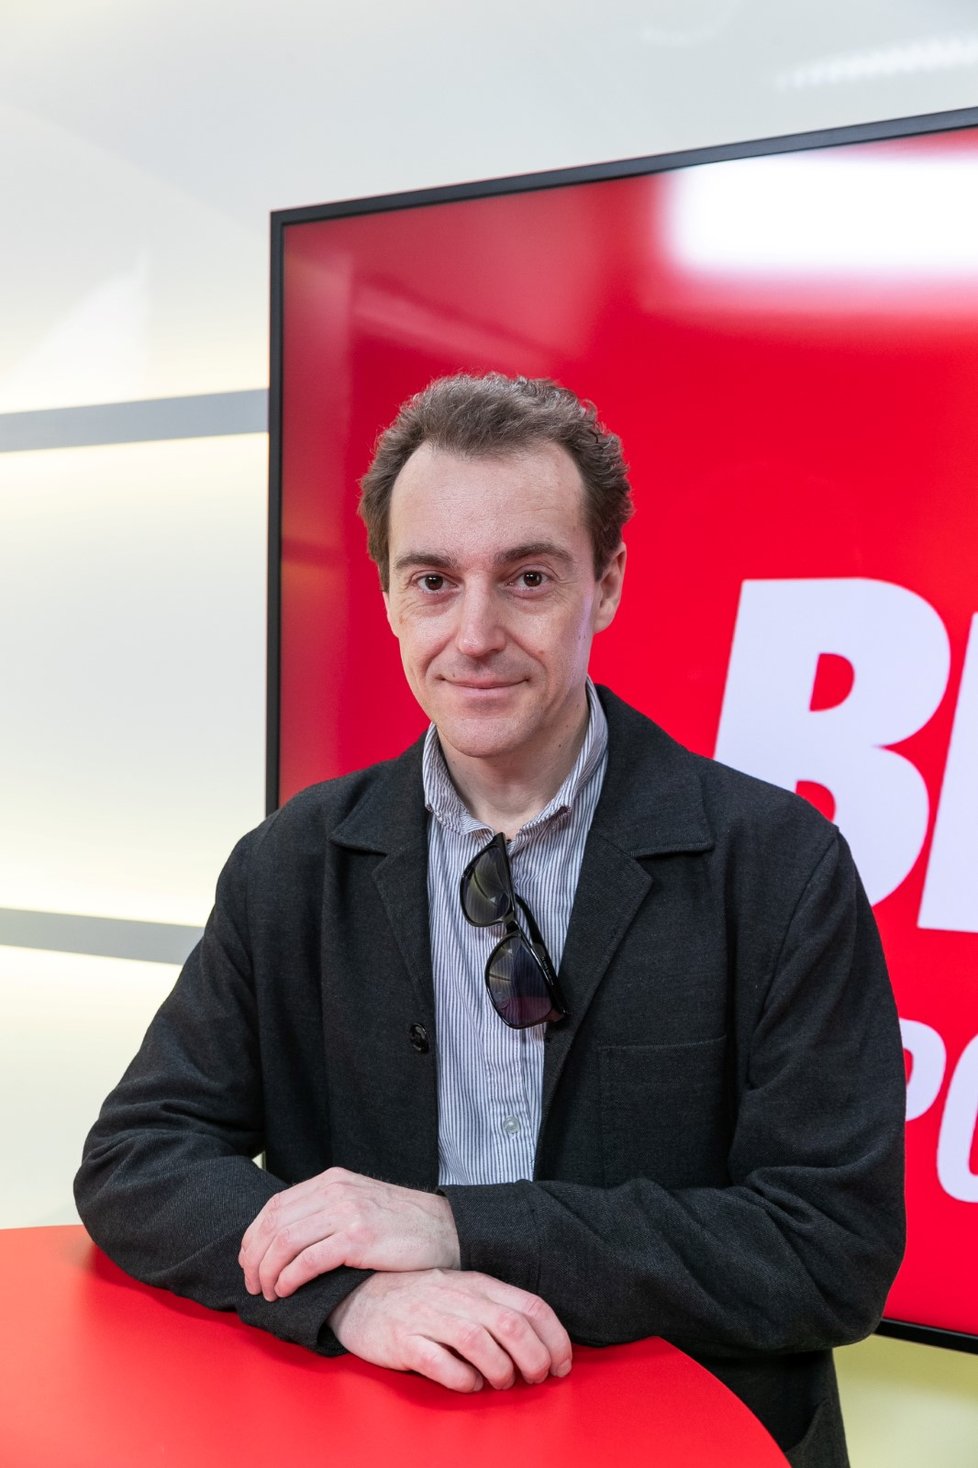 Hostem pořadu Blesk Podcast byl oceněný herec Michal Kern.